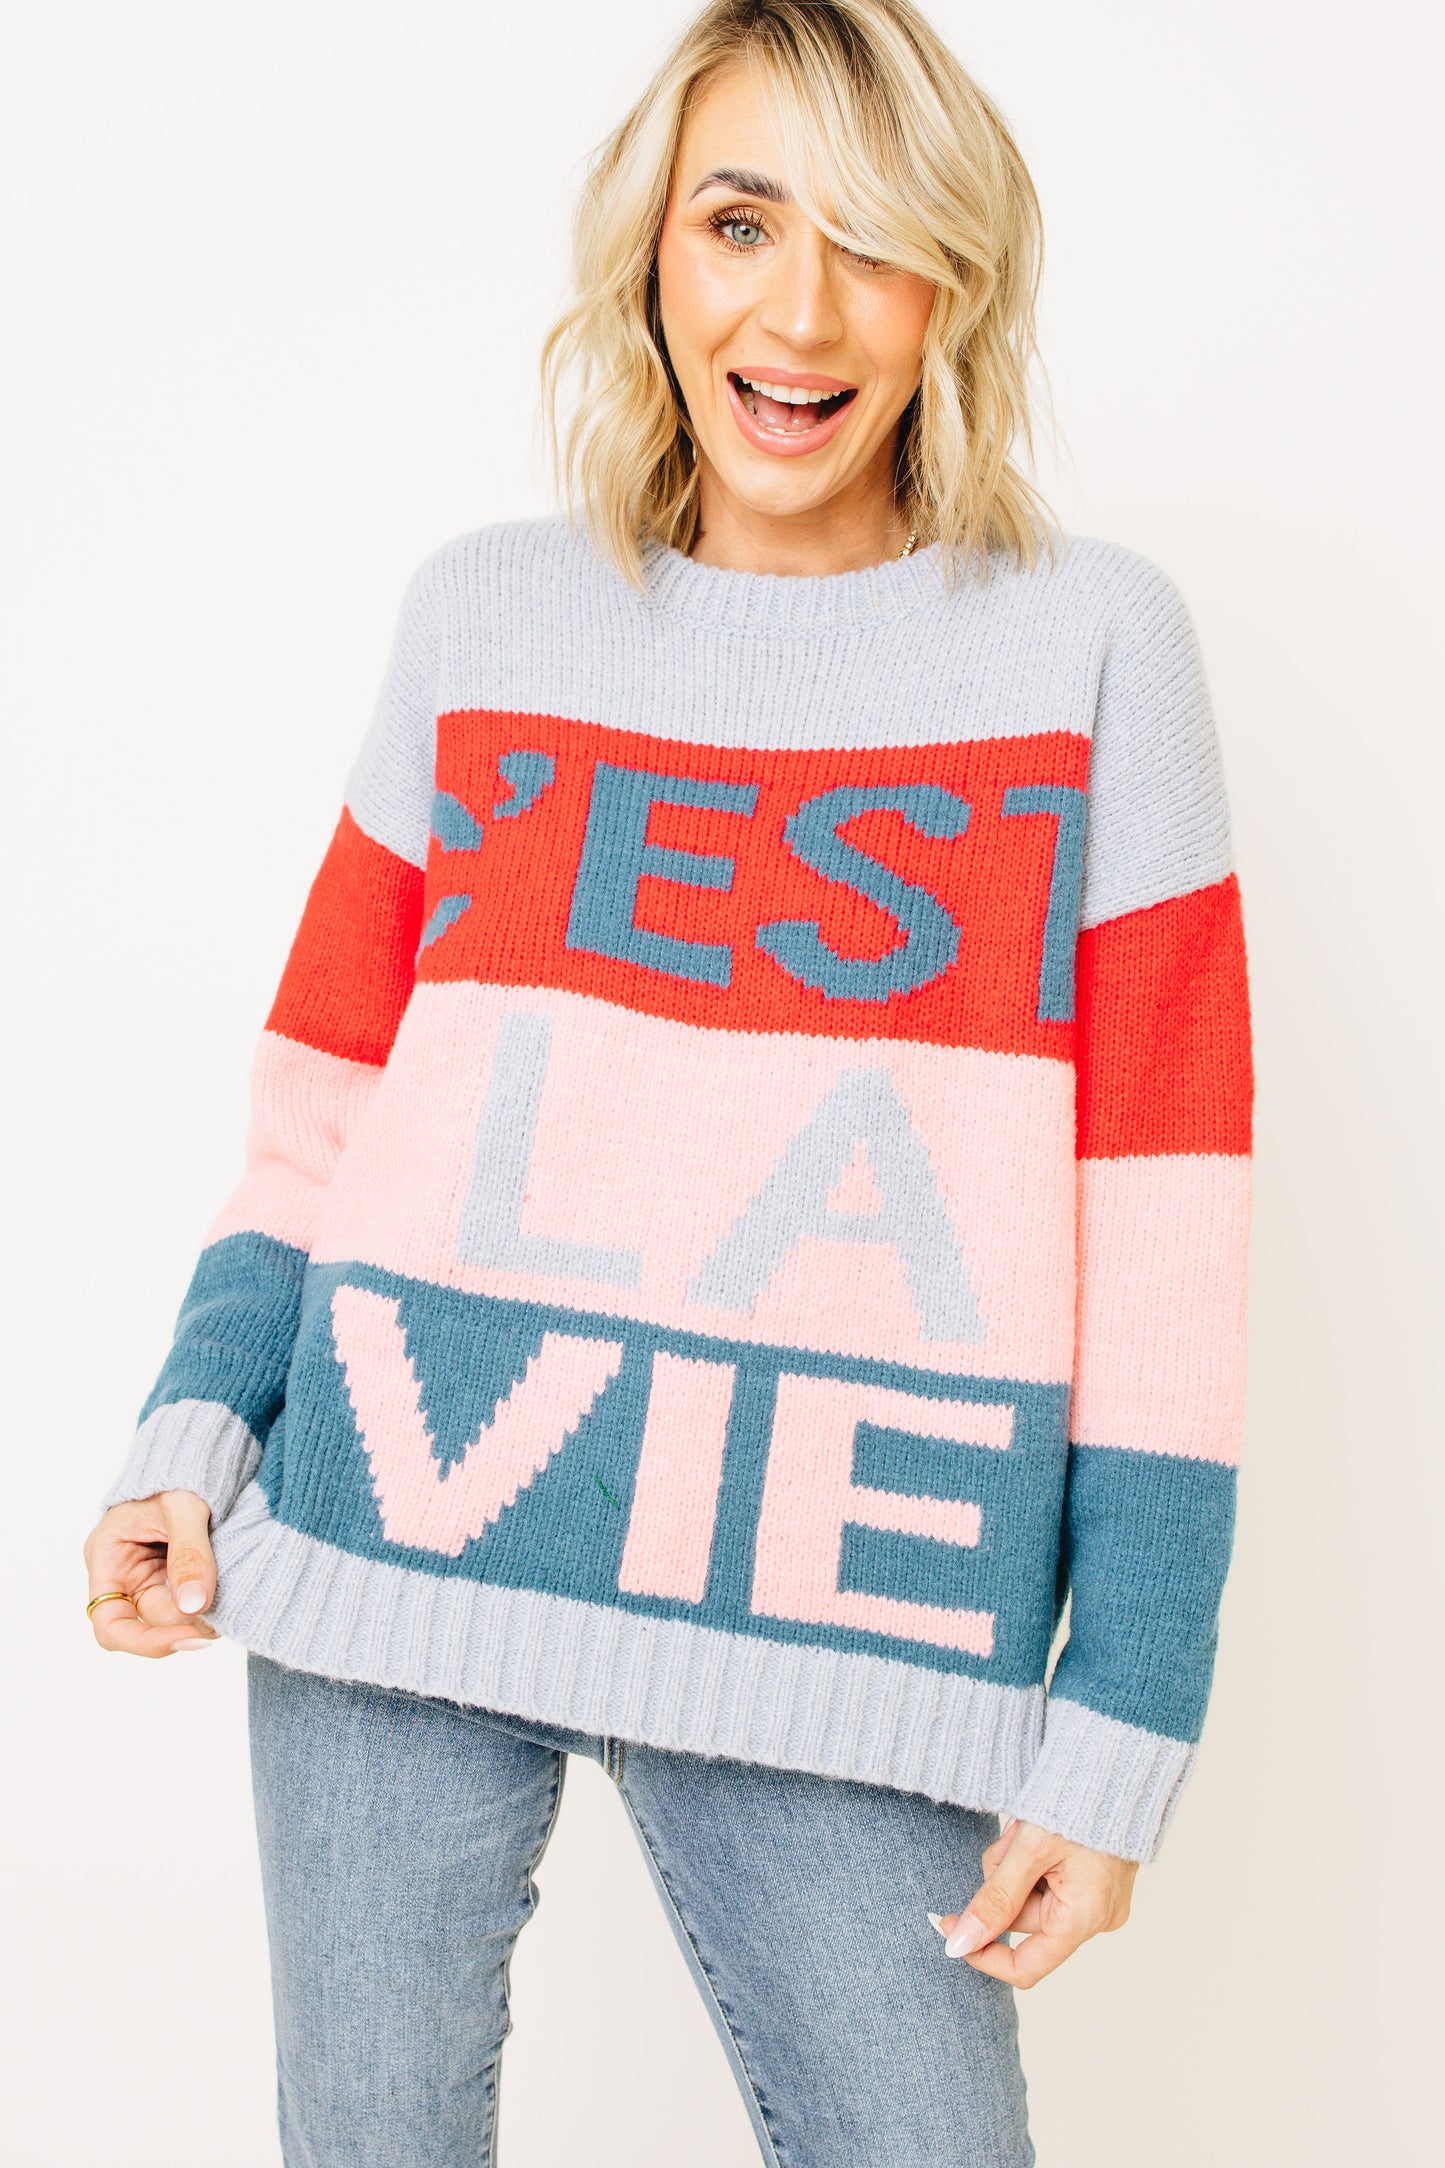 C'EST LA VIE Graphic Color Block Sweater (S-L)